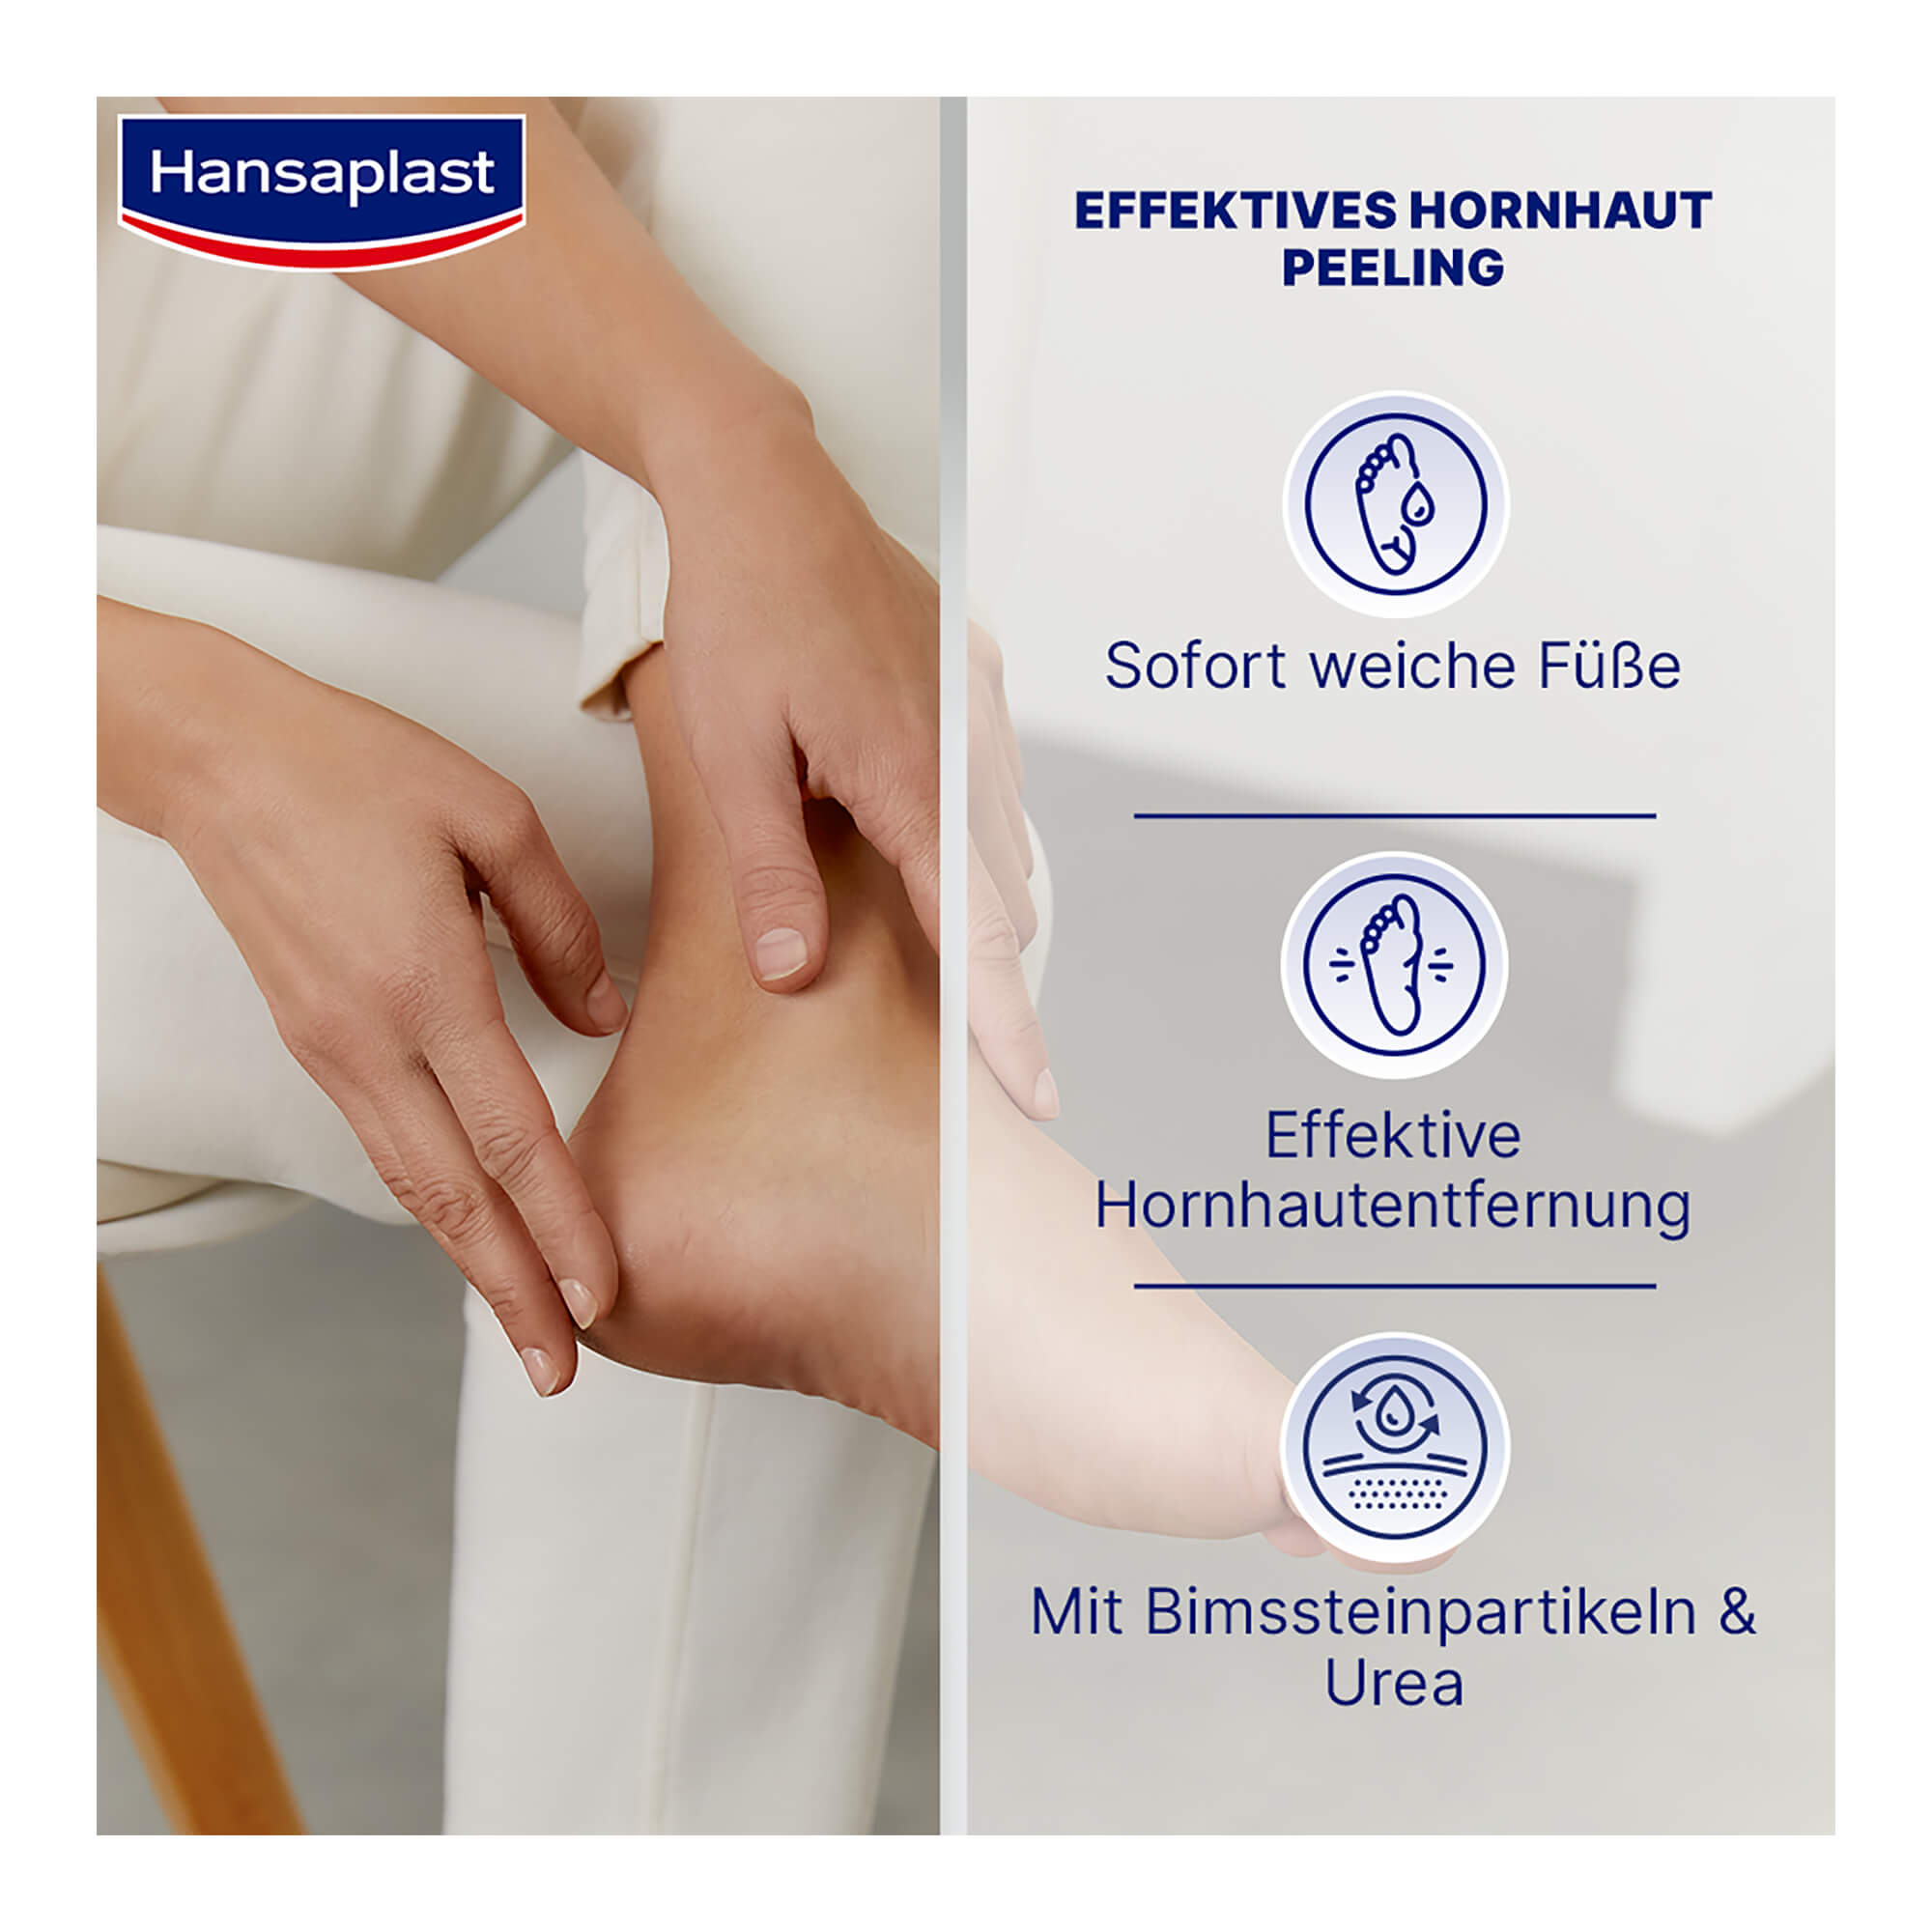 Grafik Hansaplast Anti-Hornhaut Peeling 2in1 Sofort weiche Füße. Effektive Hornhautentfernung. Mit Bimssteinpartikeln & Urea